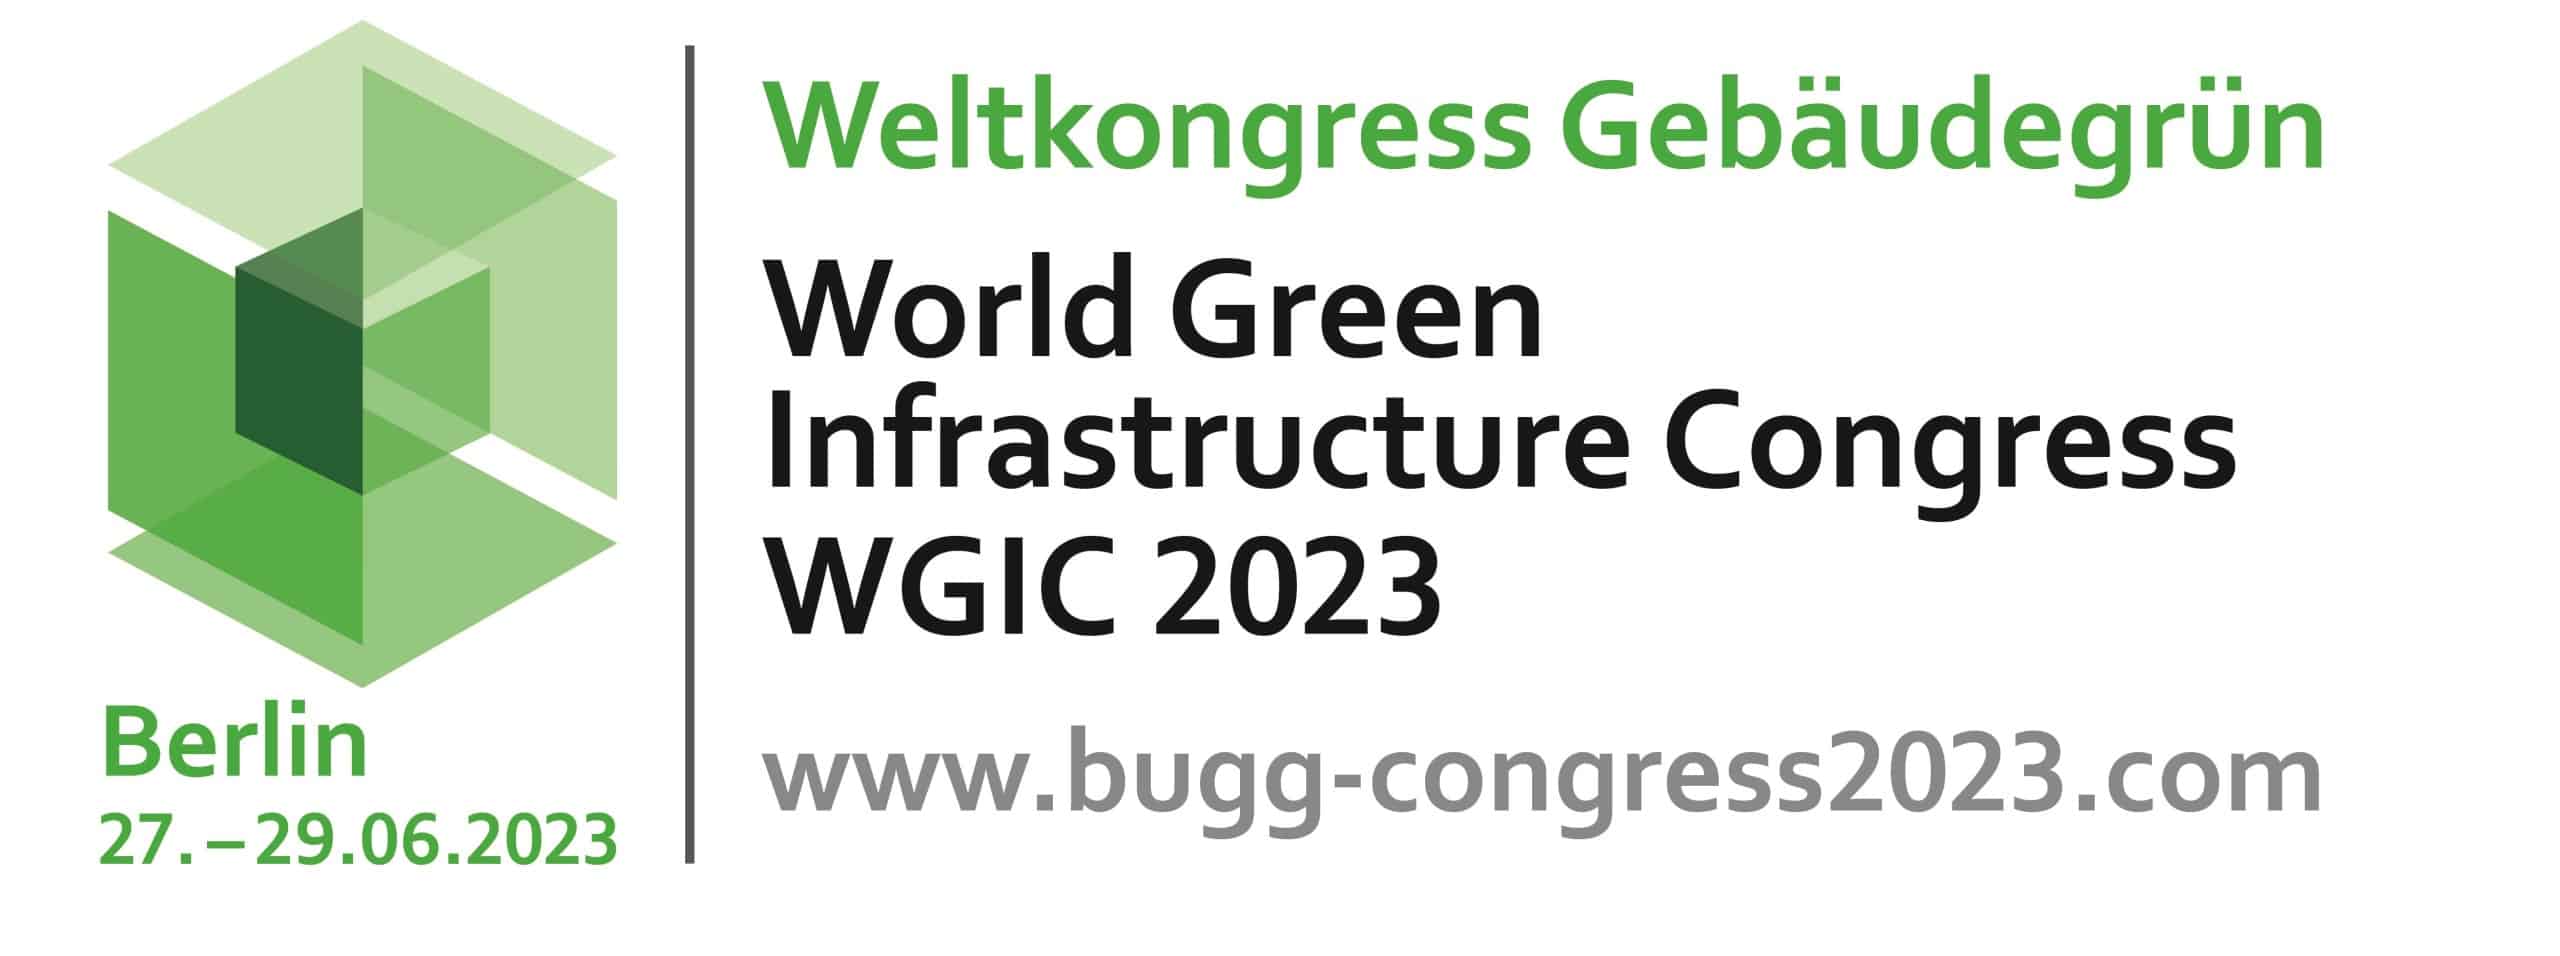 Seien Sie dabei beim Weltkongress Gebäudegrün am 27. bis 29.06.2023 in Berlin! Quelle: Bundesverband GebäudeGrün e.V.